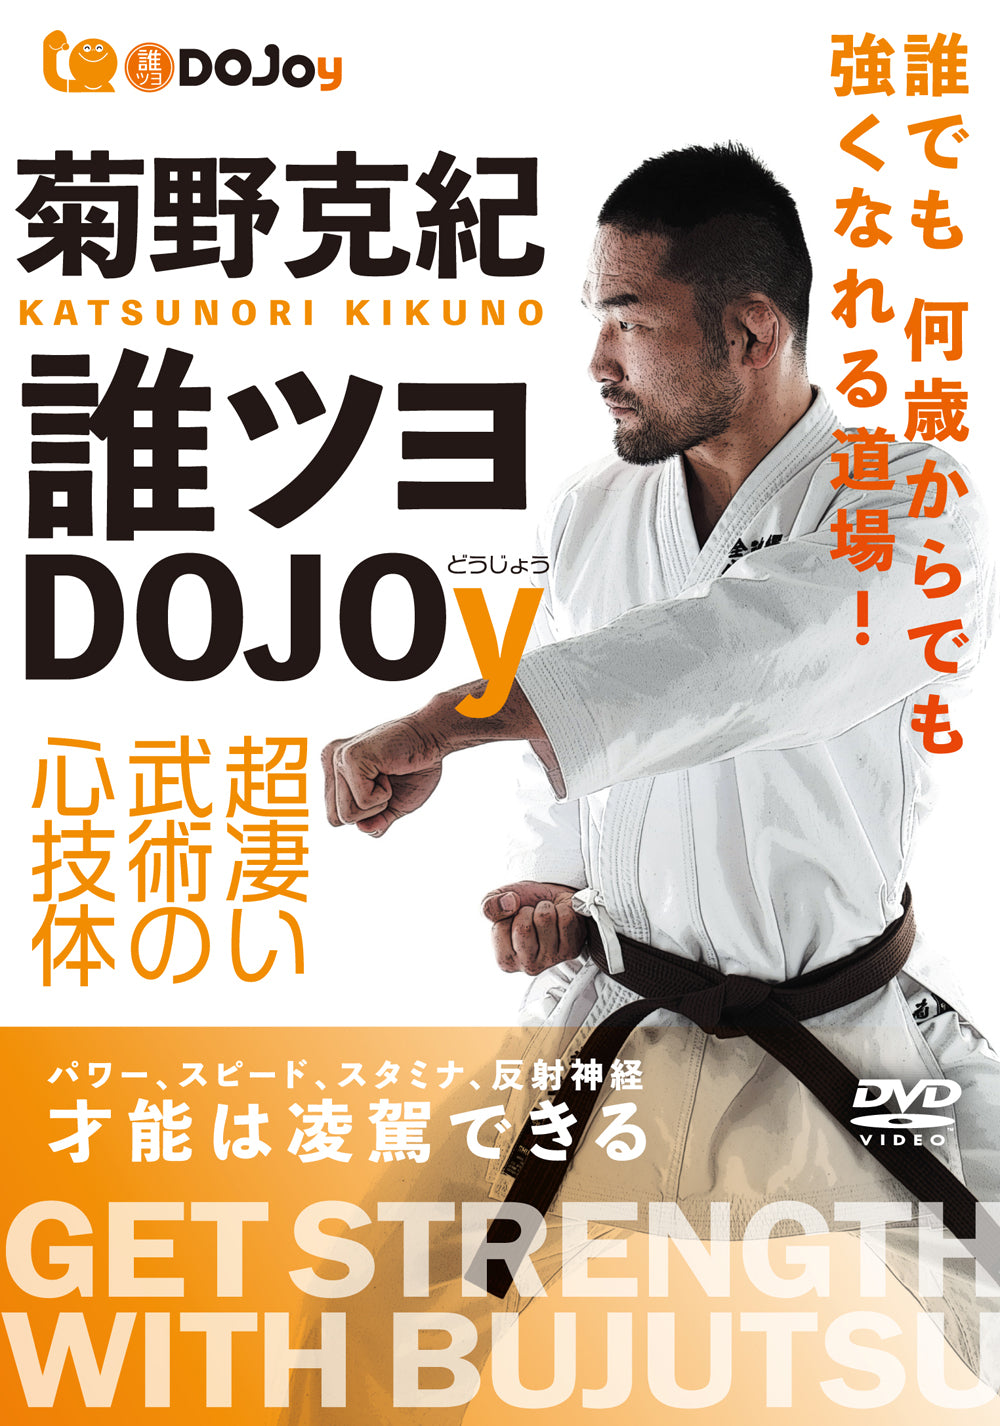 Obtenga fuerza con el DVD Bujutsu de Katsunori Kikuno